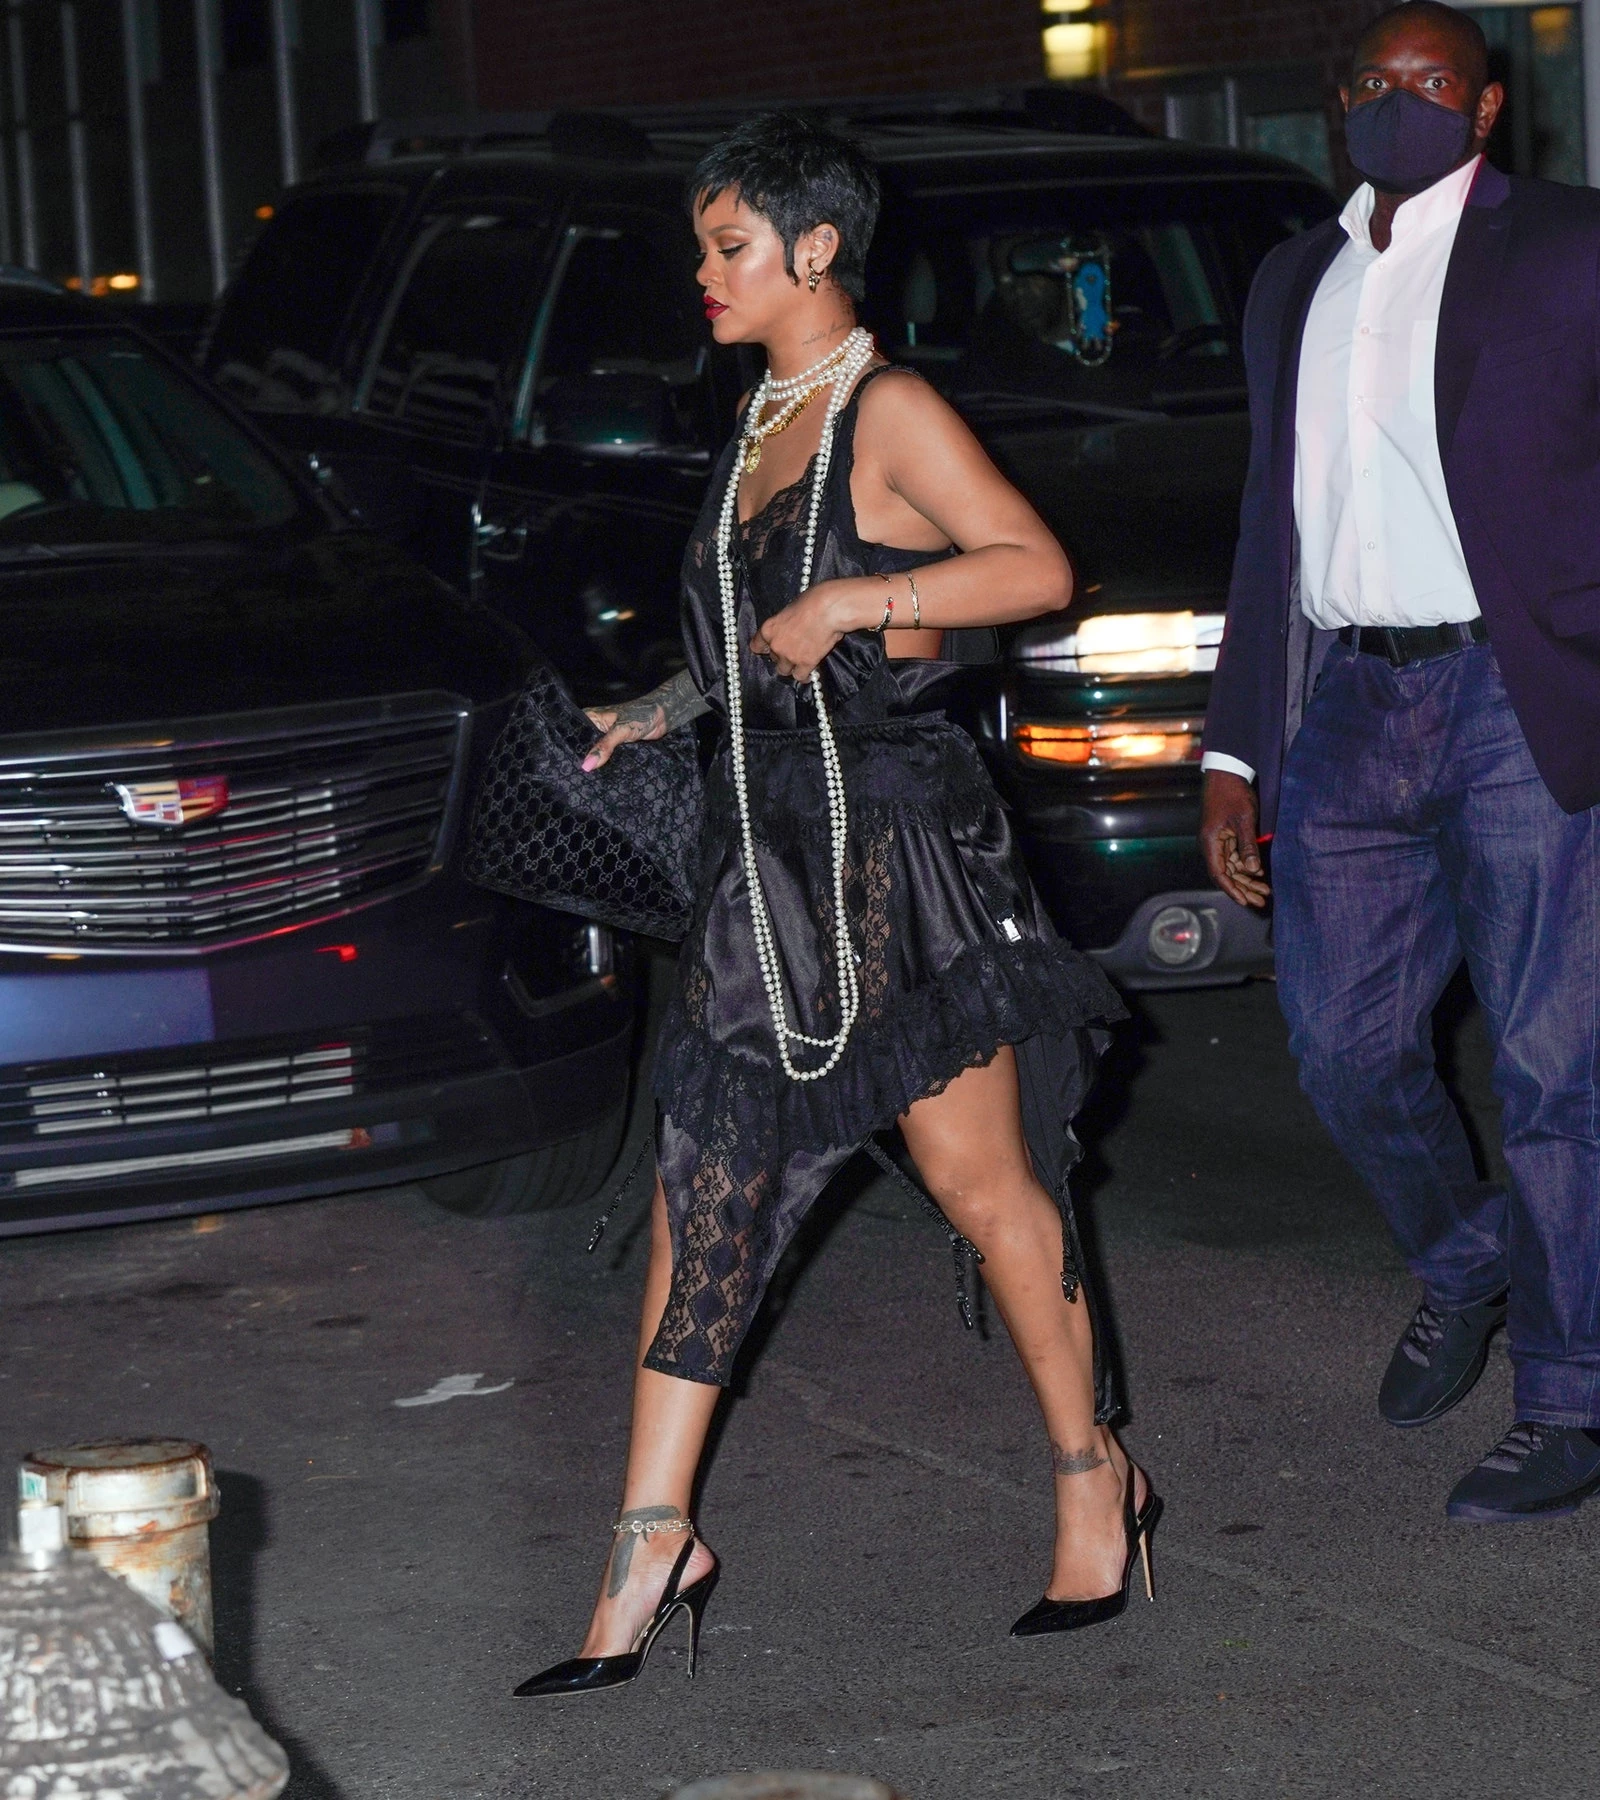 Папараці зафіксували співачку під час вечері в Нью-Йорку з вінтажною сумкою Gucci. Модель із знаменитою монограмою бренду, випущена ще у 1990-х роках.4